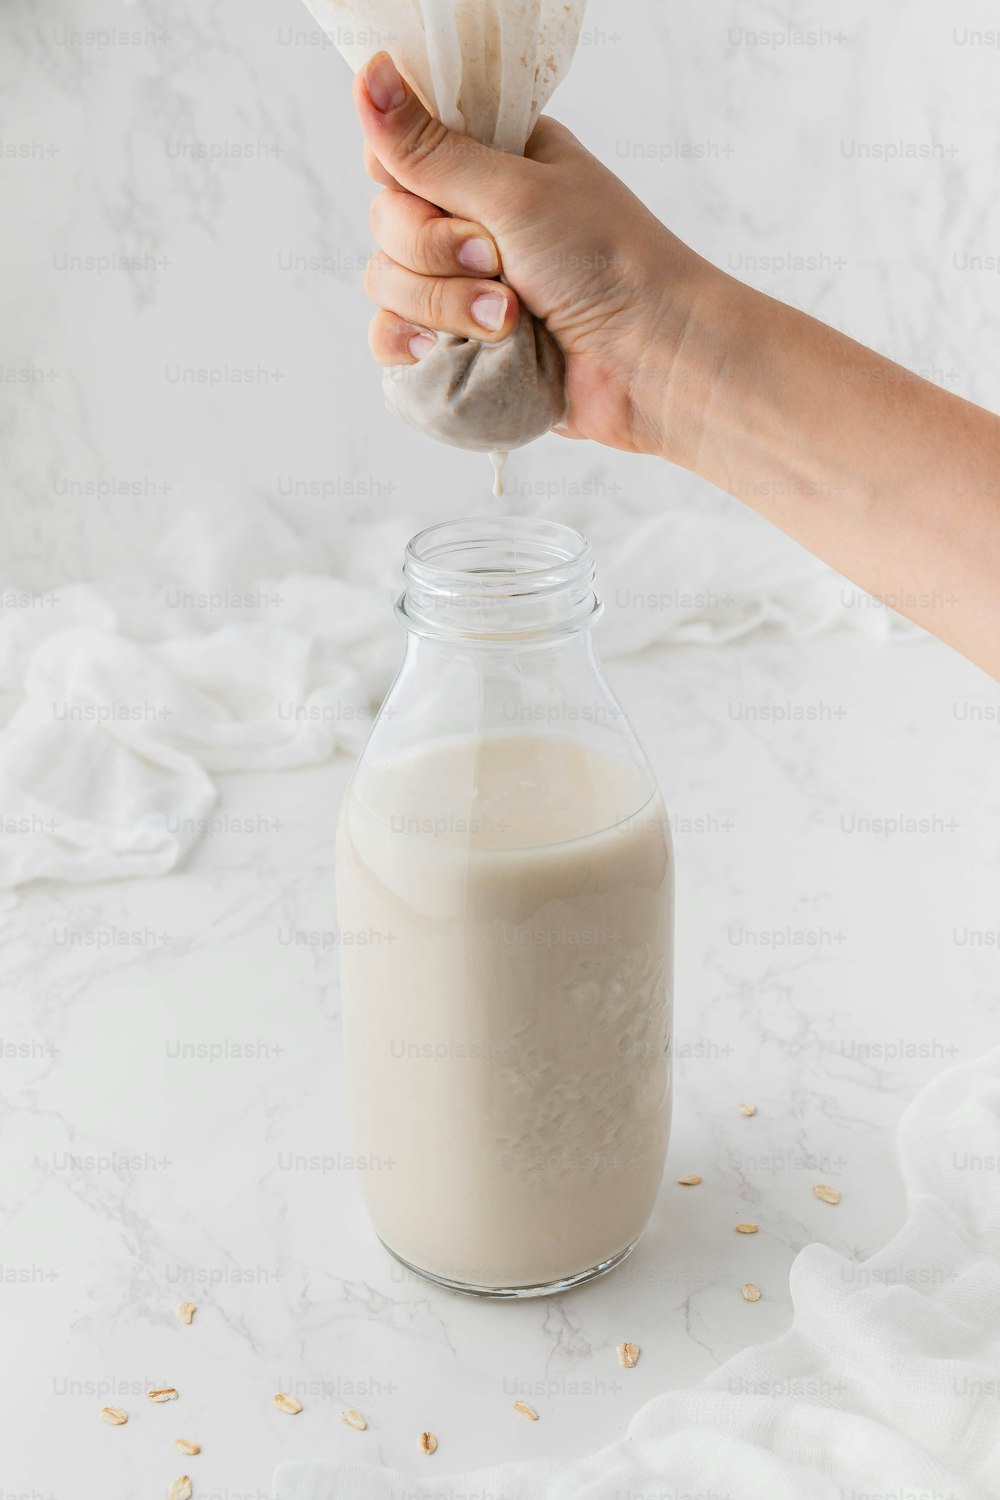 Una persona está vertiendo un vaso de leche en un frasco